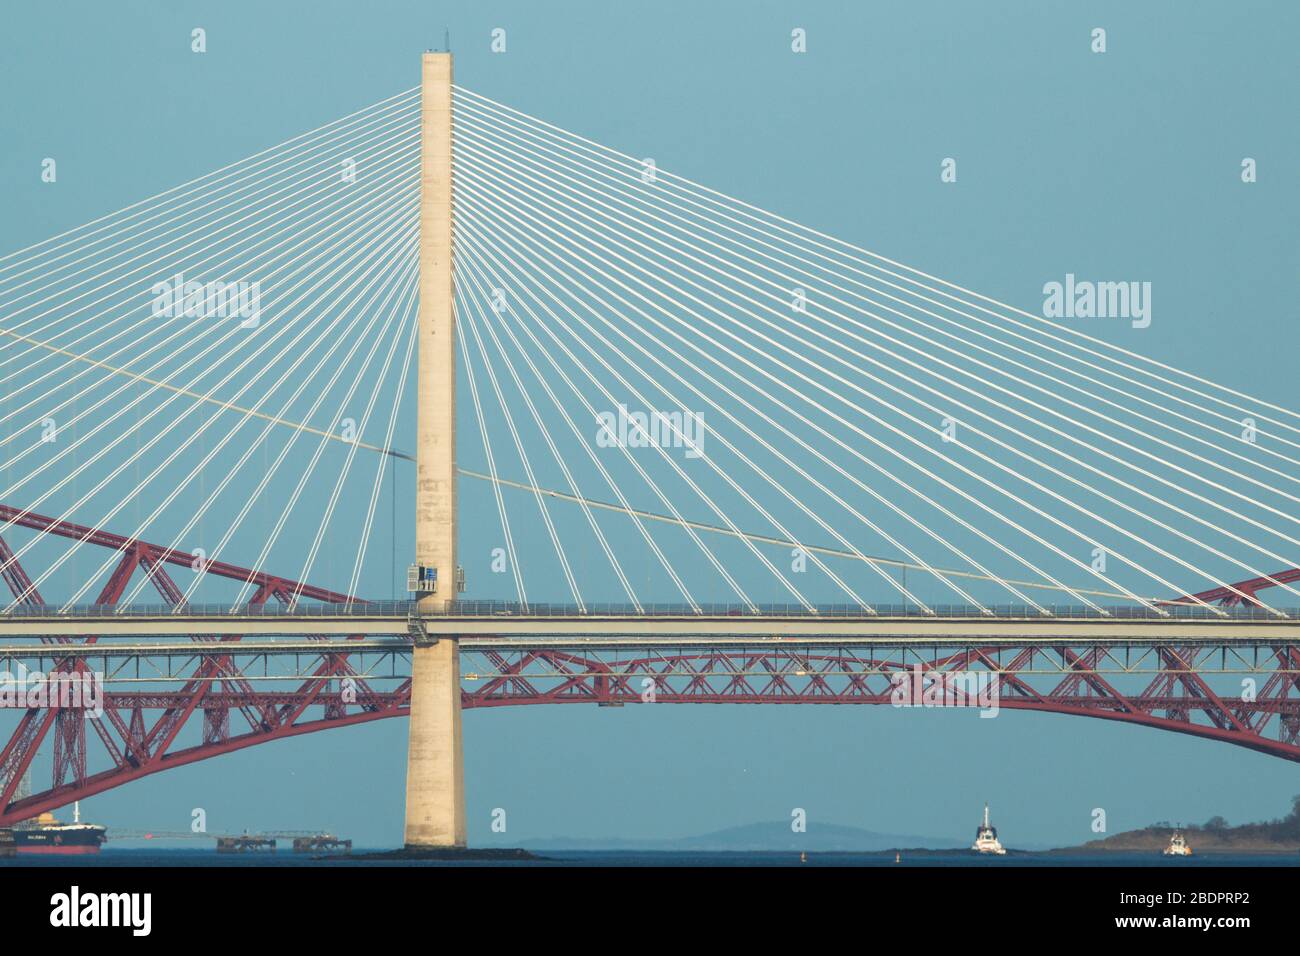 Grangemouth, Reino Unido. 8 de abril de 2020. En la foto: El Queensferry Crossing - el puente más nuevo de Escocia y el tercer cruce de la Firth of Forth que conecta Fife y Lothian, que lleva la autopista M90, que abarca 2,7 km (1.7 millas), es el puente de tres torres más largo del mundo y con cables que cruzan a mitad de la extensión. Este innovador diseño proporciona una resistencia y rigidez adicionales, lo que permite que las torres y la cubierta sean más delgadas y elegantes. Crédito: Colin Fisher/Alamy Live News. Foto de stock